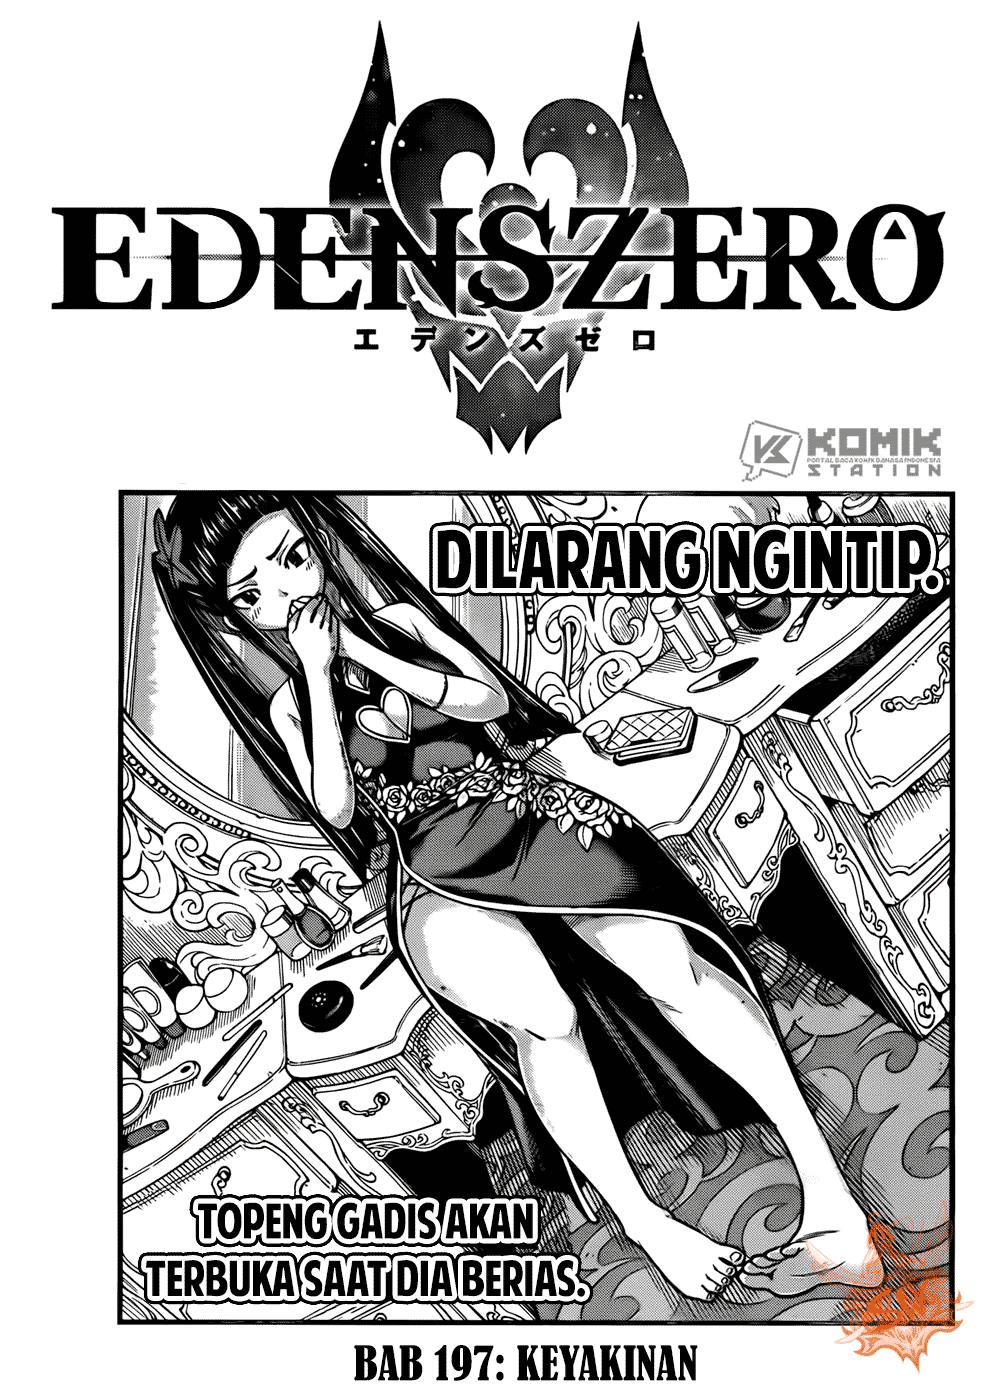 Eden’s Zero Chapter 197